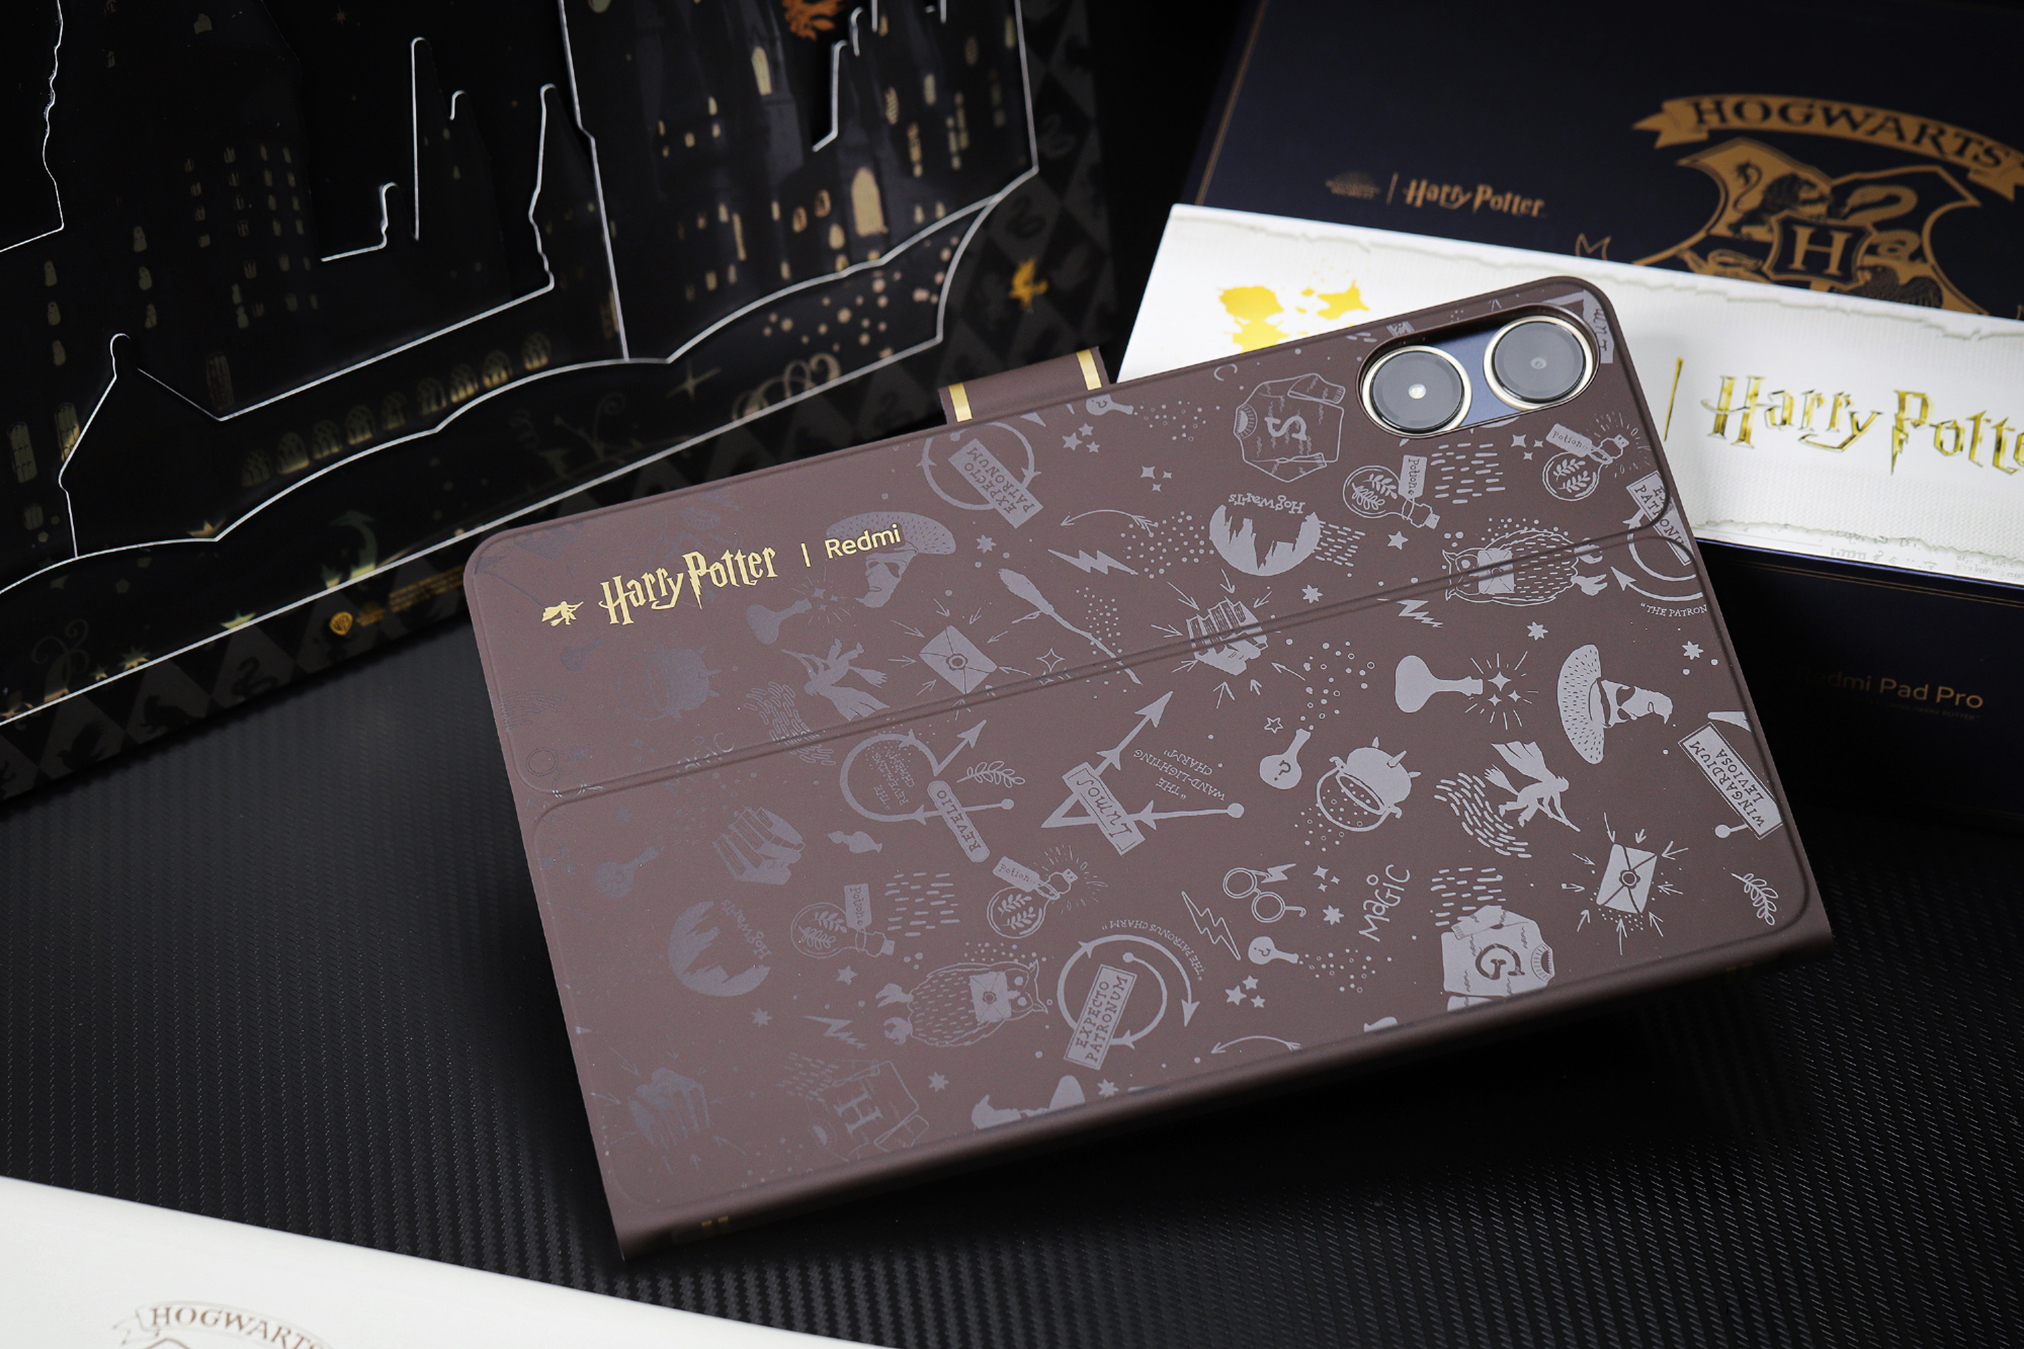 Cận cảnh máy tính bảng 12 inch giá rẻ của Xiaomi: Thiết kế đẹp như iPad, có cả bản Harry Potter đặc biệt cho các Potterheads mà giá chỉ hơn 5 triệu đồng- Ảnh 23.